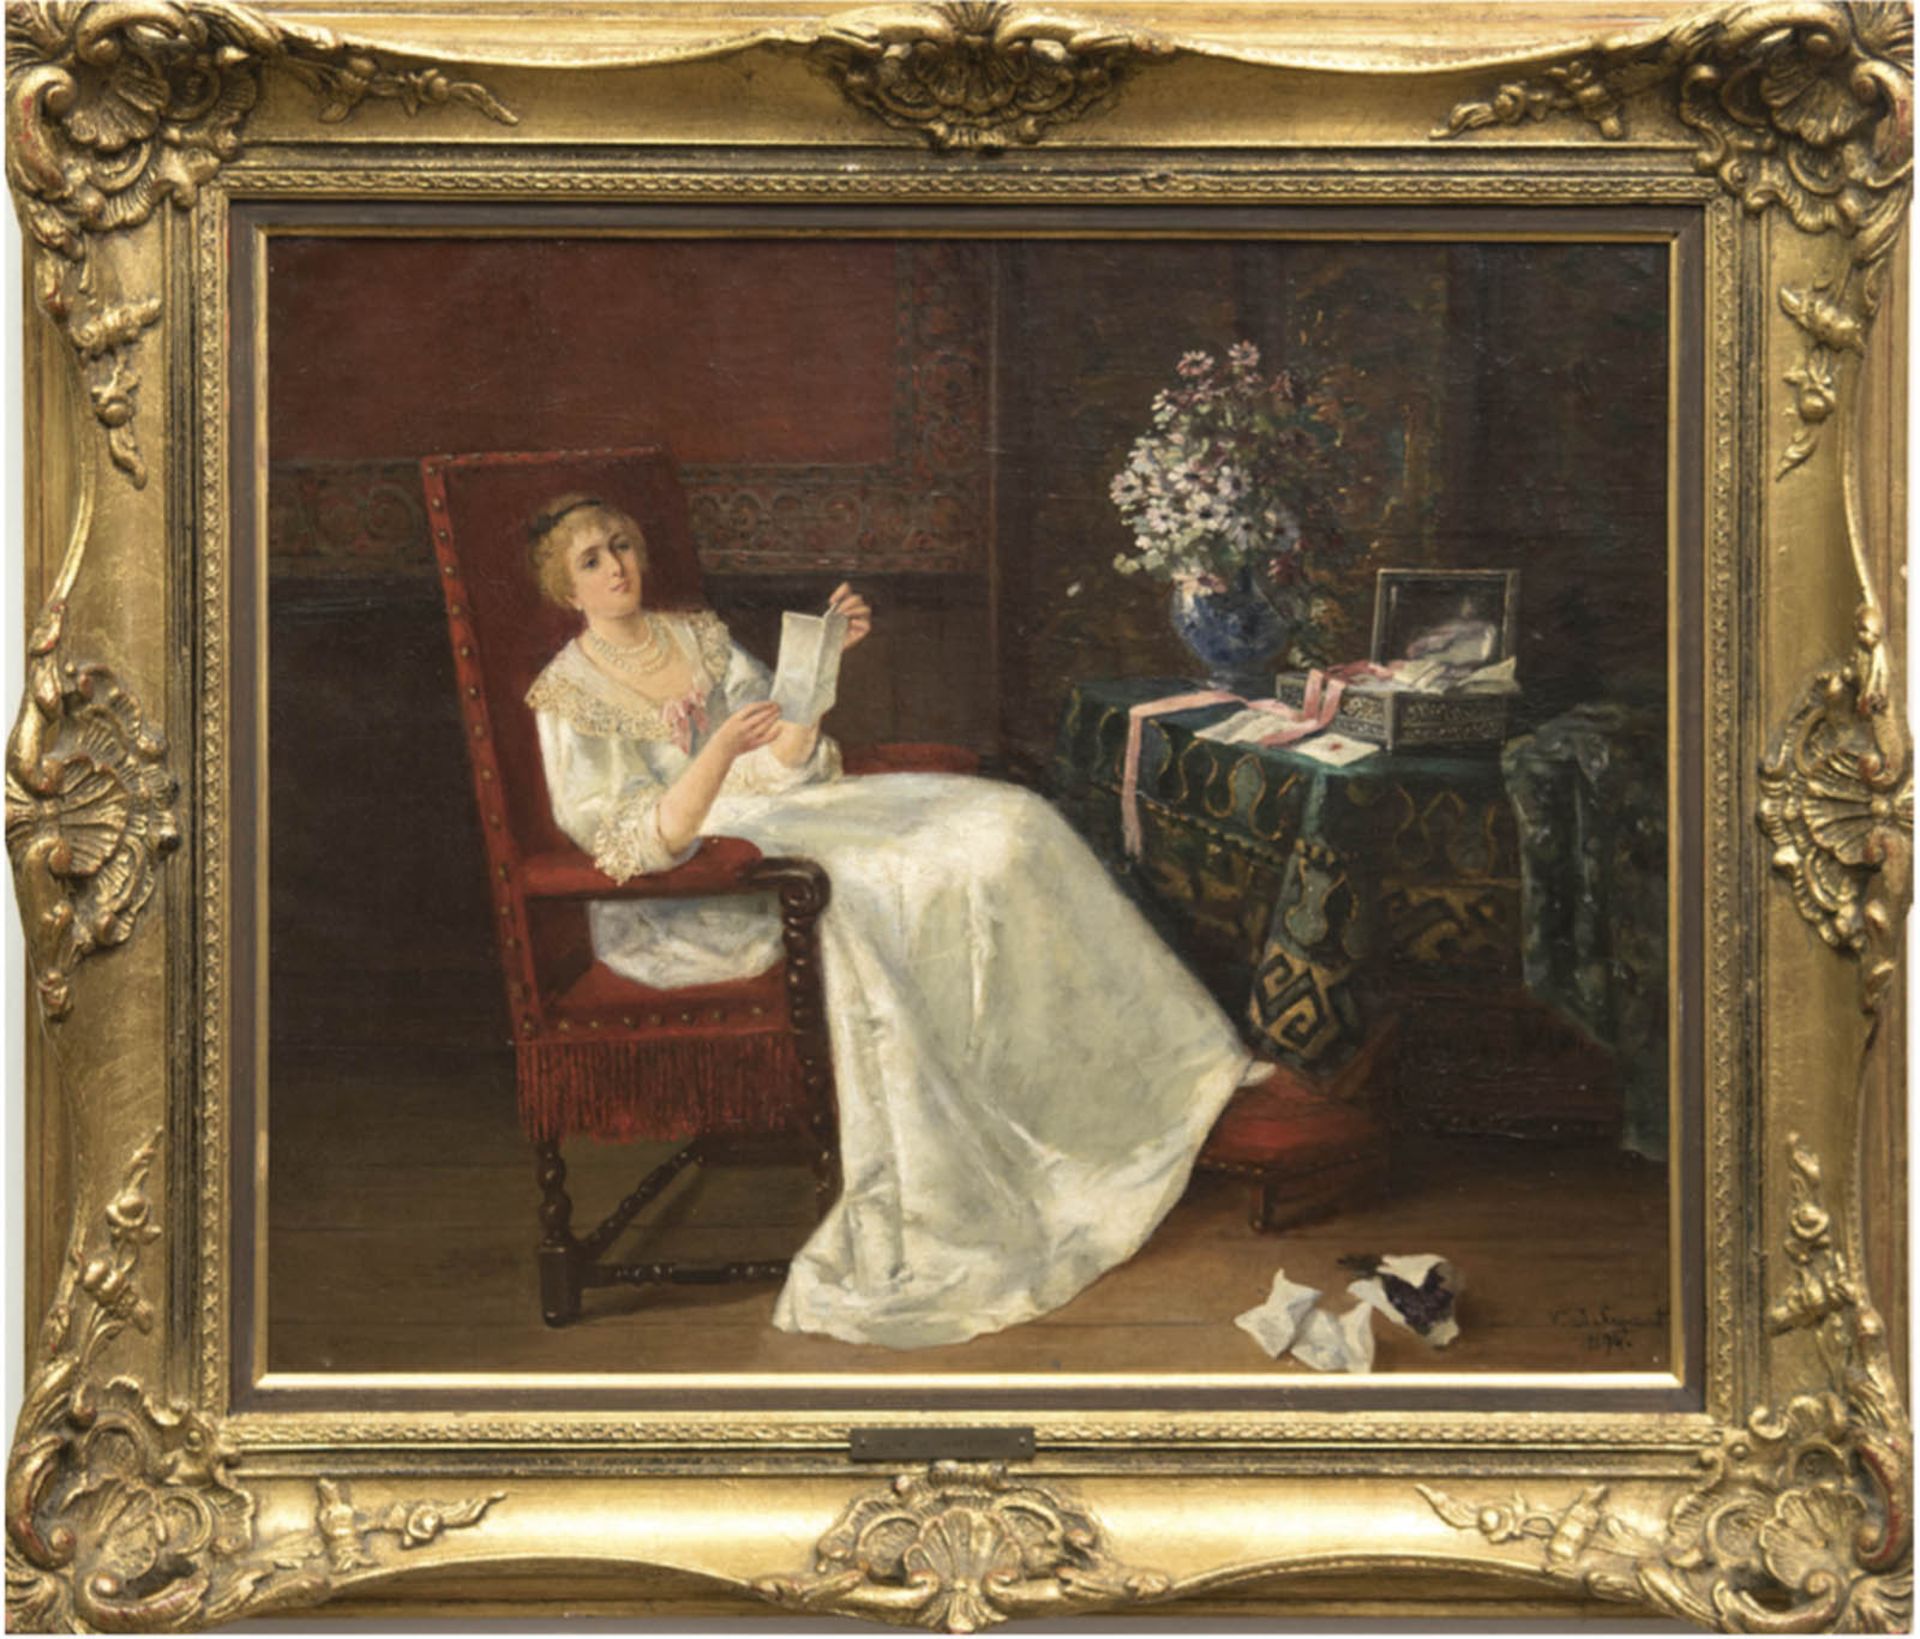 Senezcourt, V. de "Interieur mit lesender Frau, die in ihren Erinnerungen schwebt", Öl/Lw.,